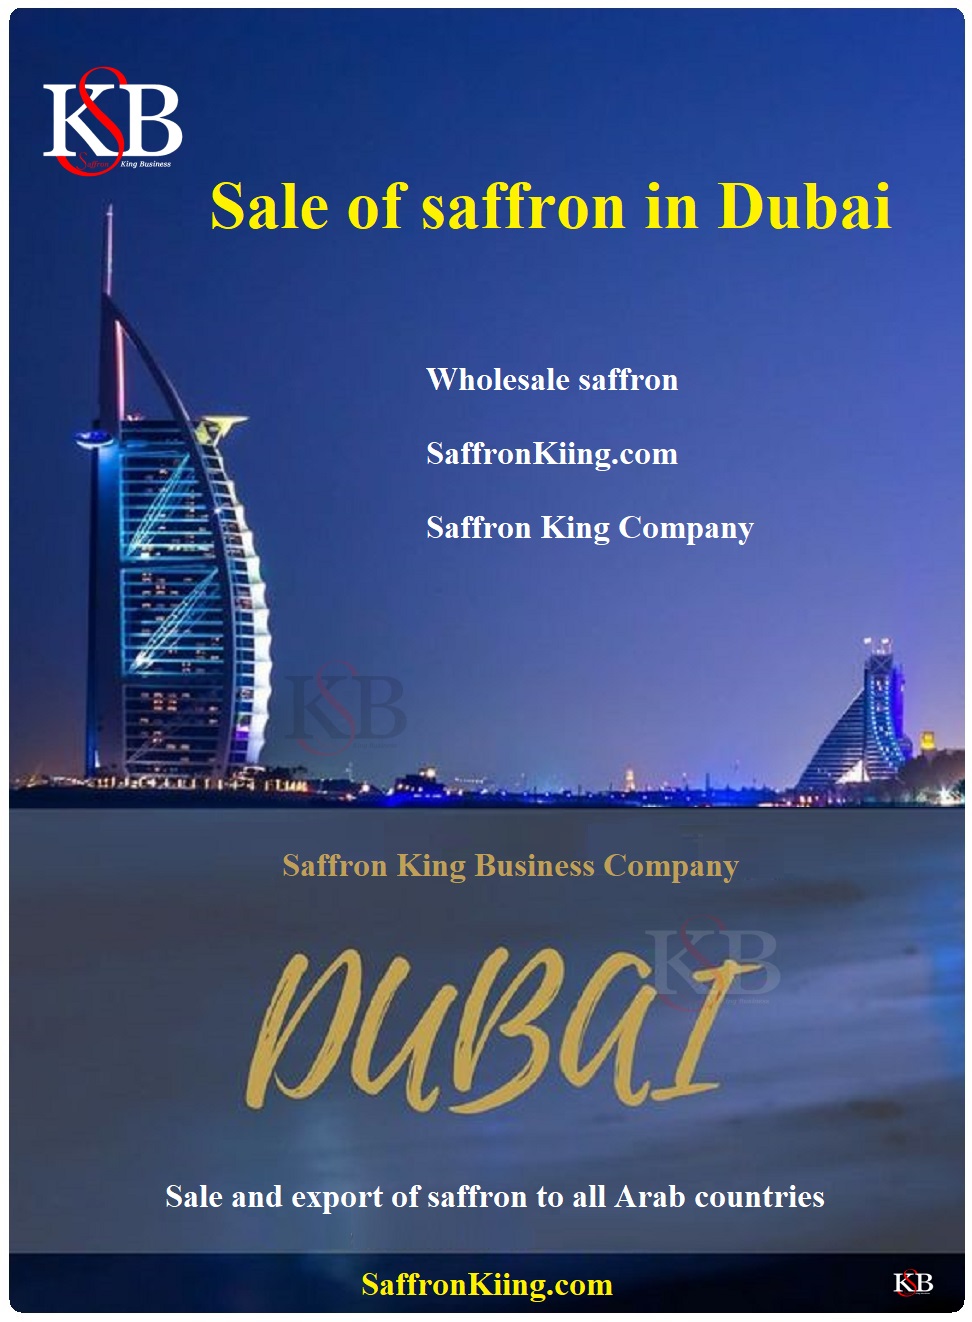 Purchase price of saffron in Dubai